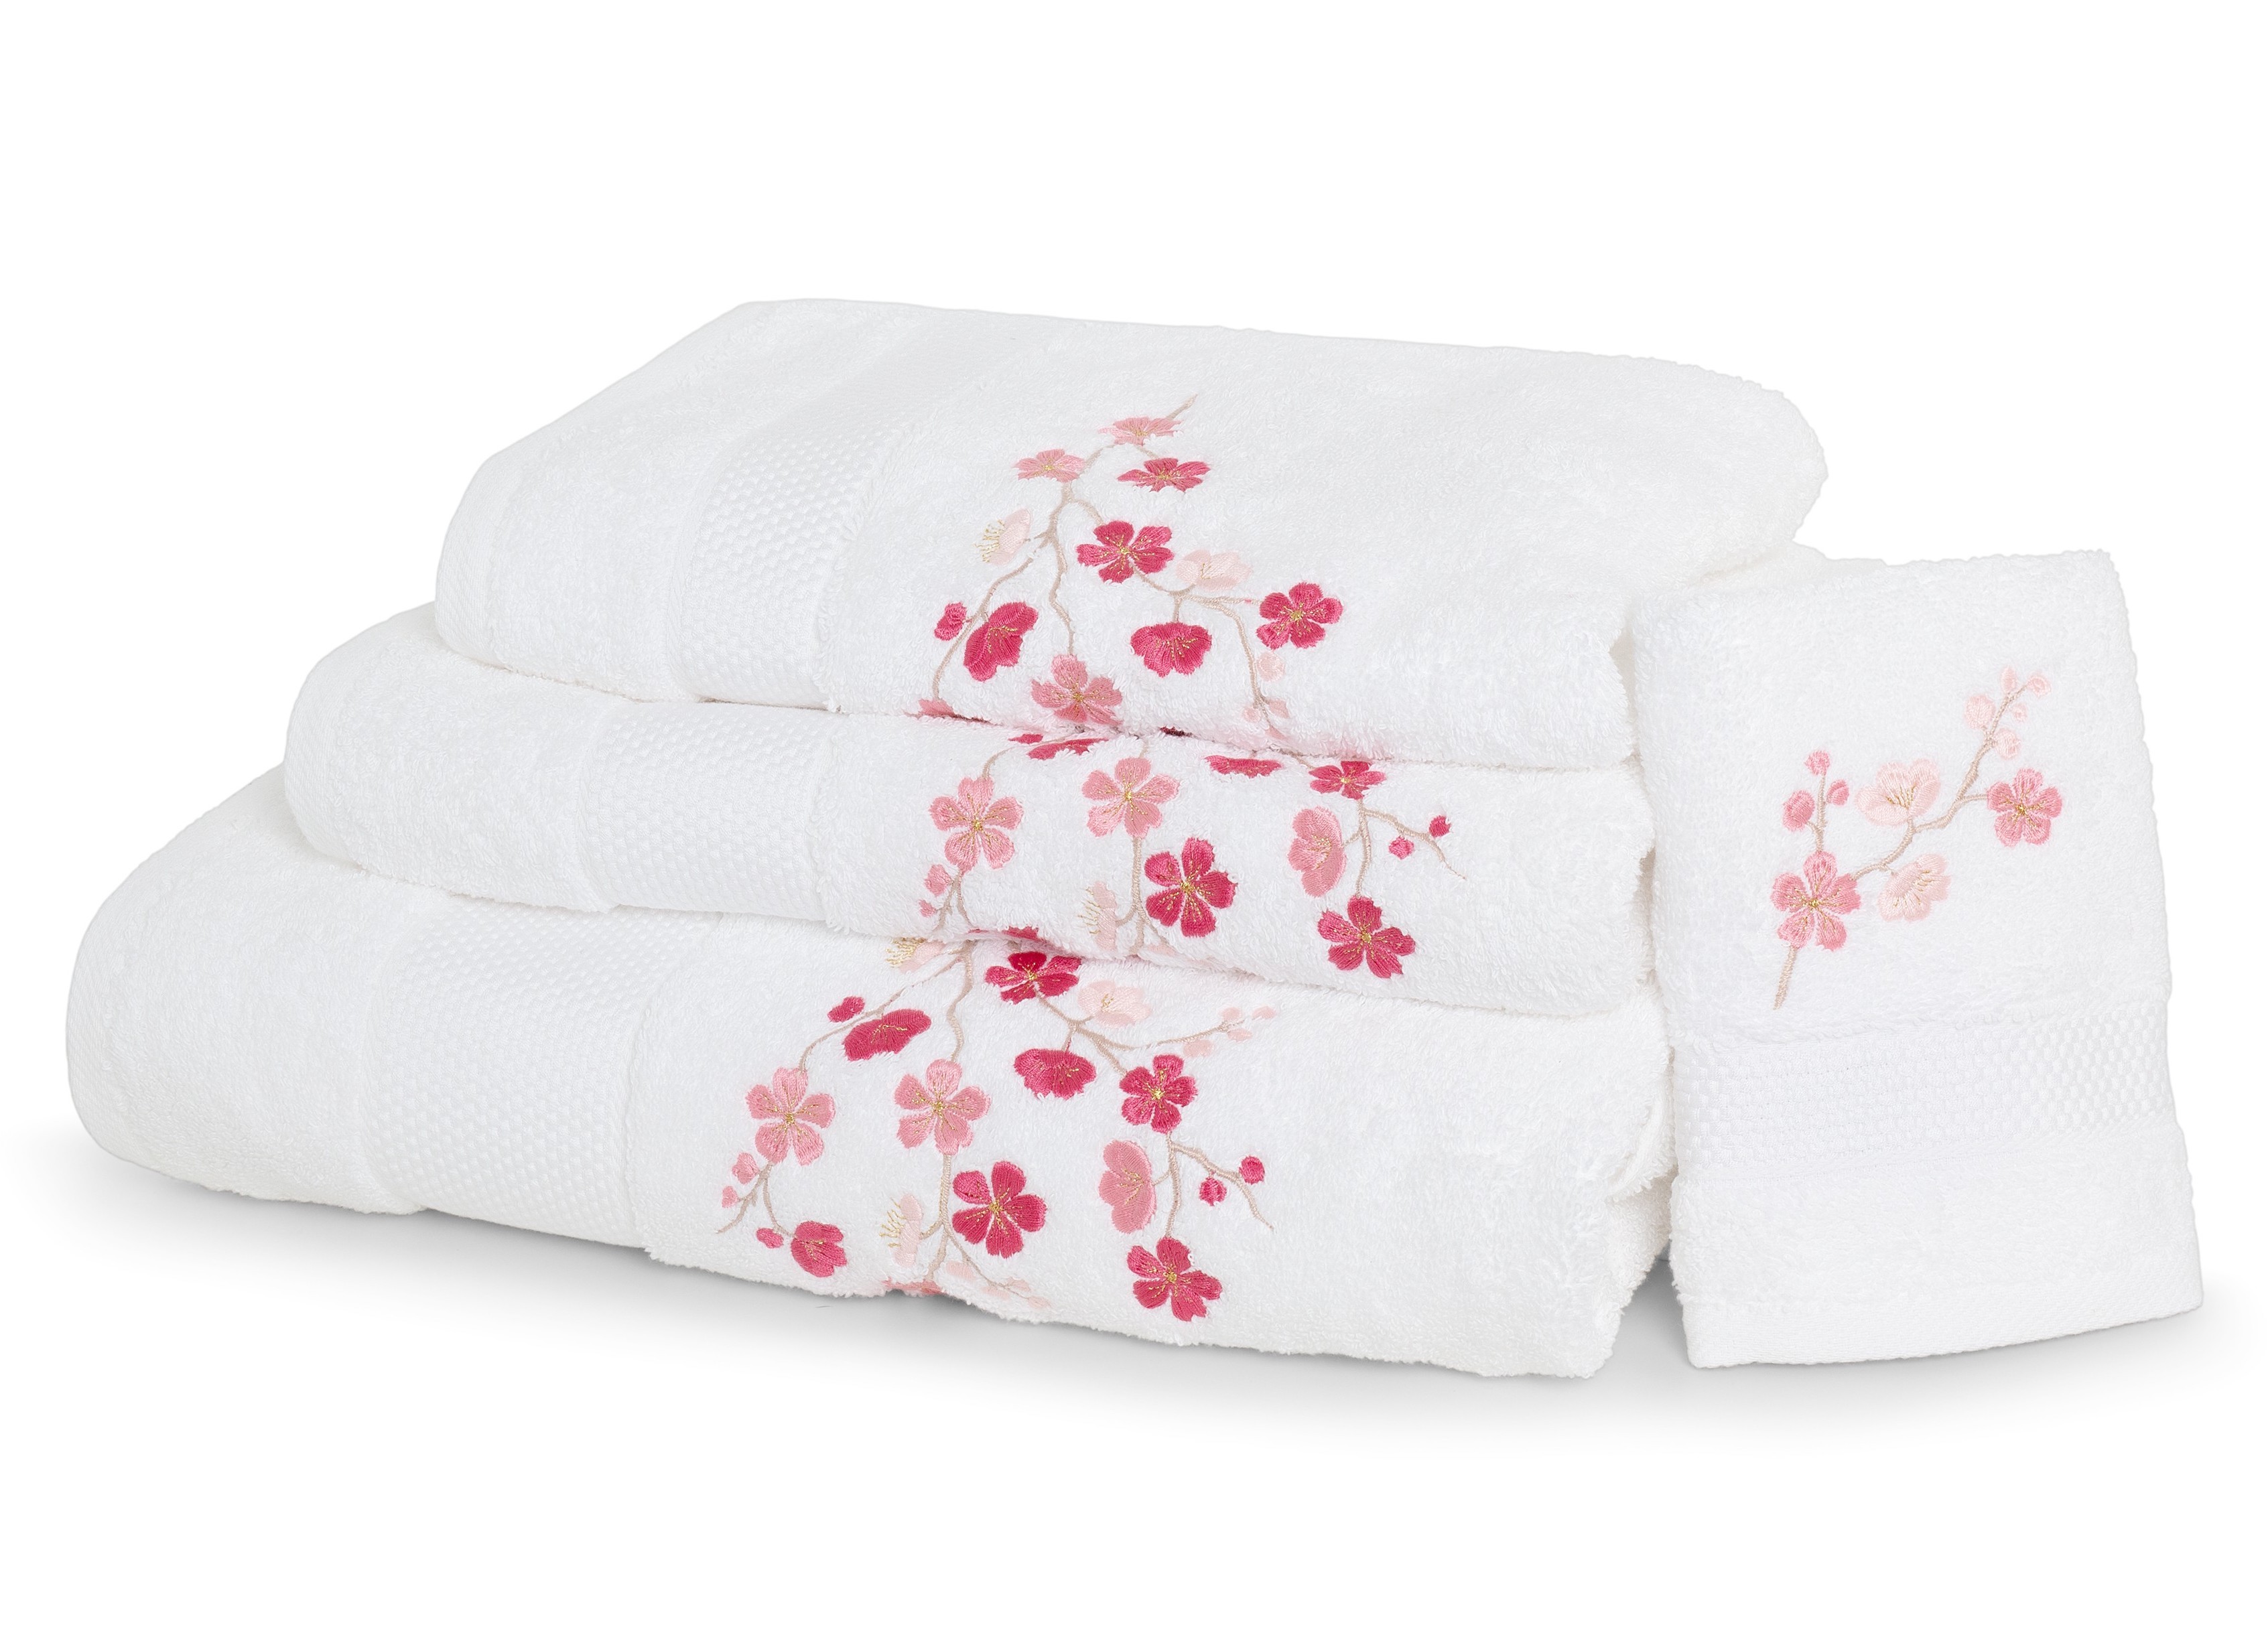 "Fleurs de pommier" bath towels